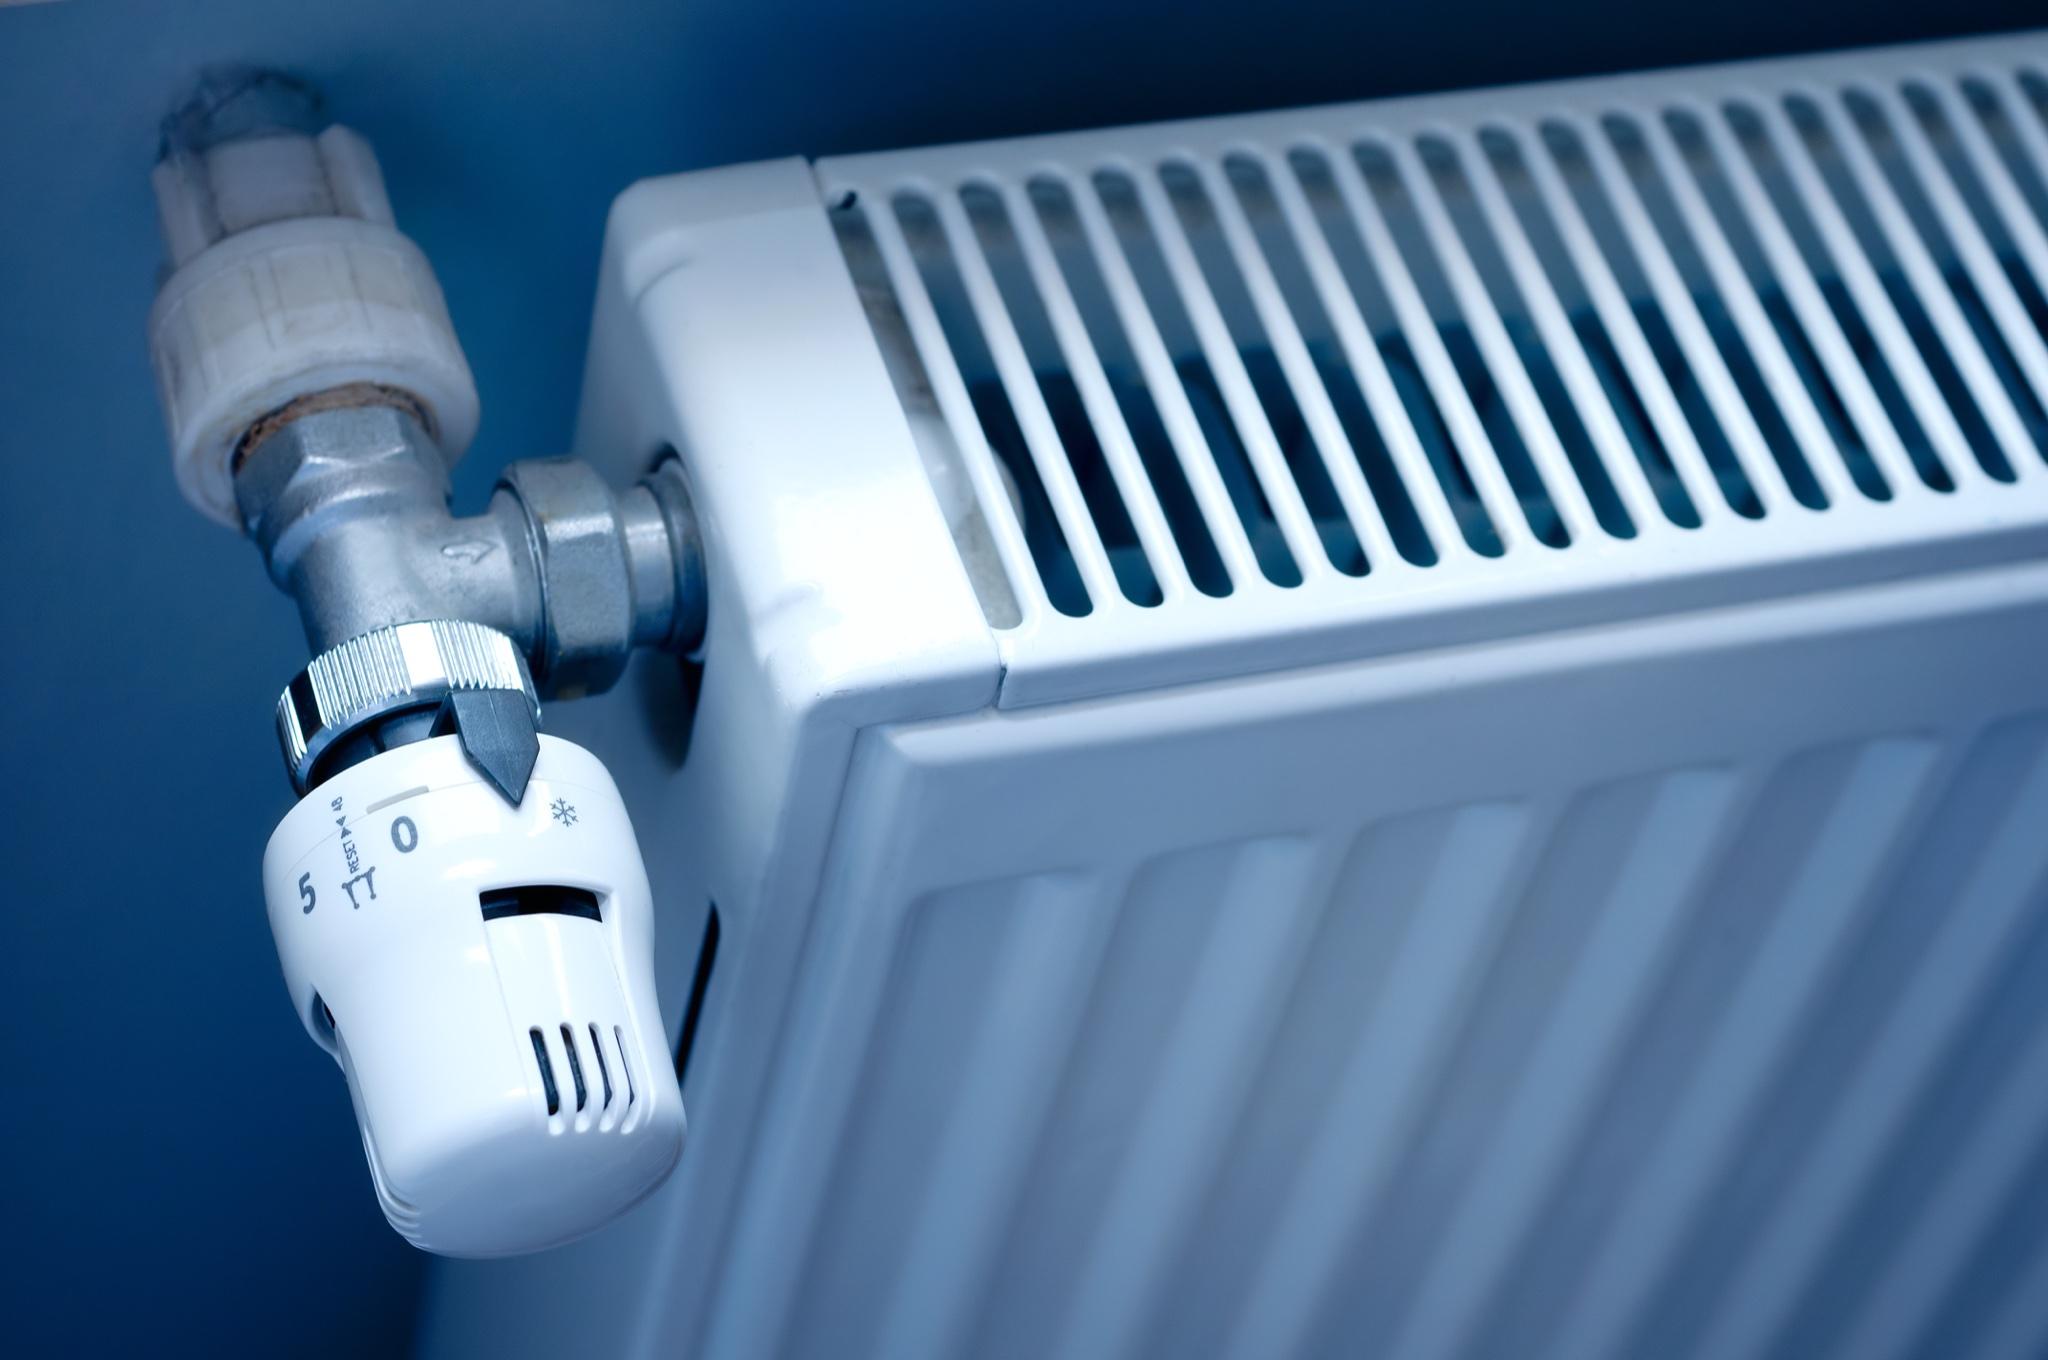 Riscaldamento: come risparmiare con i termosifoni spenti